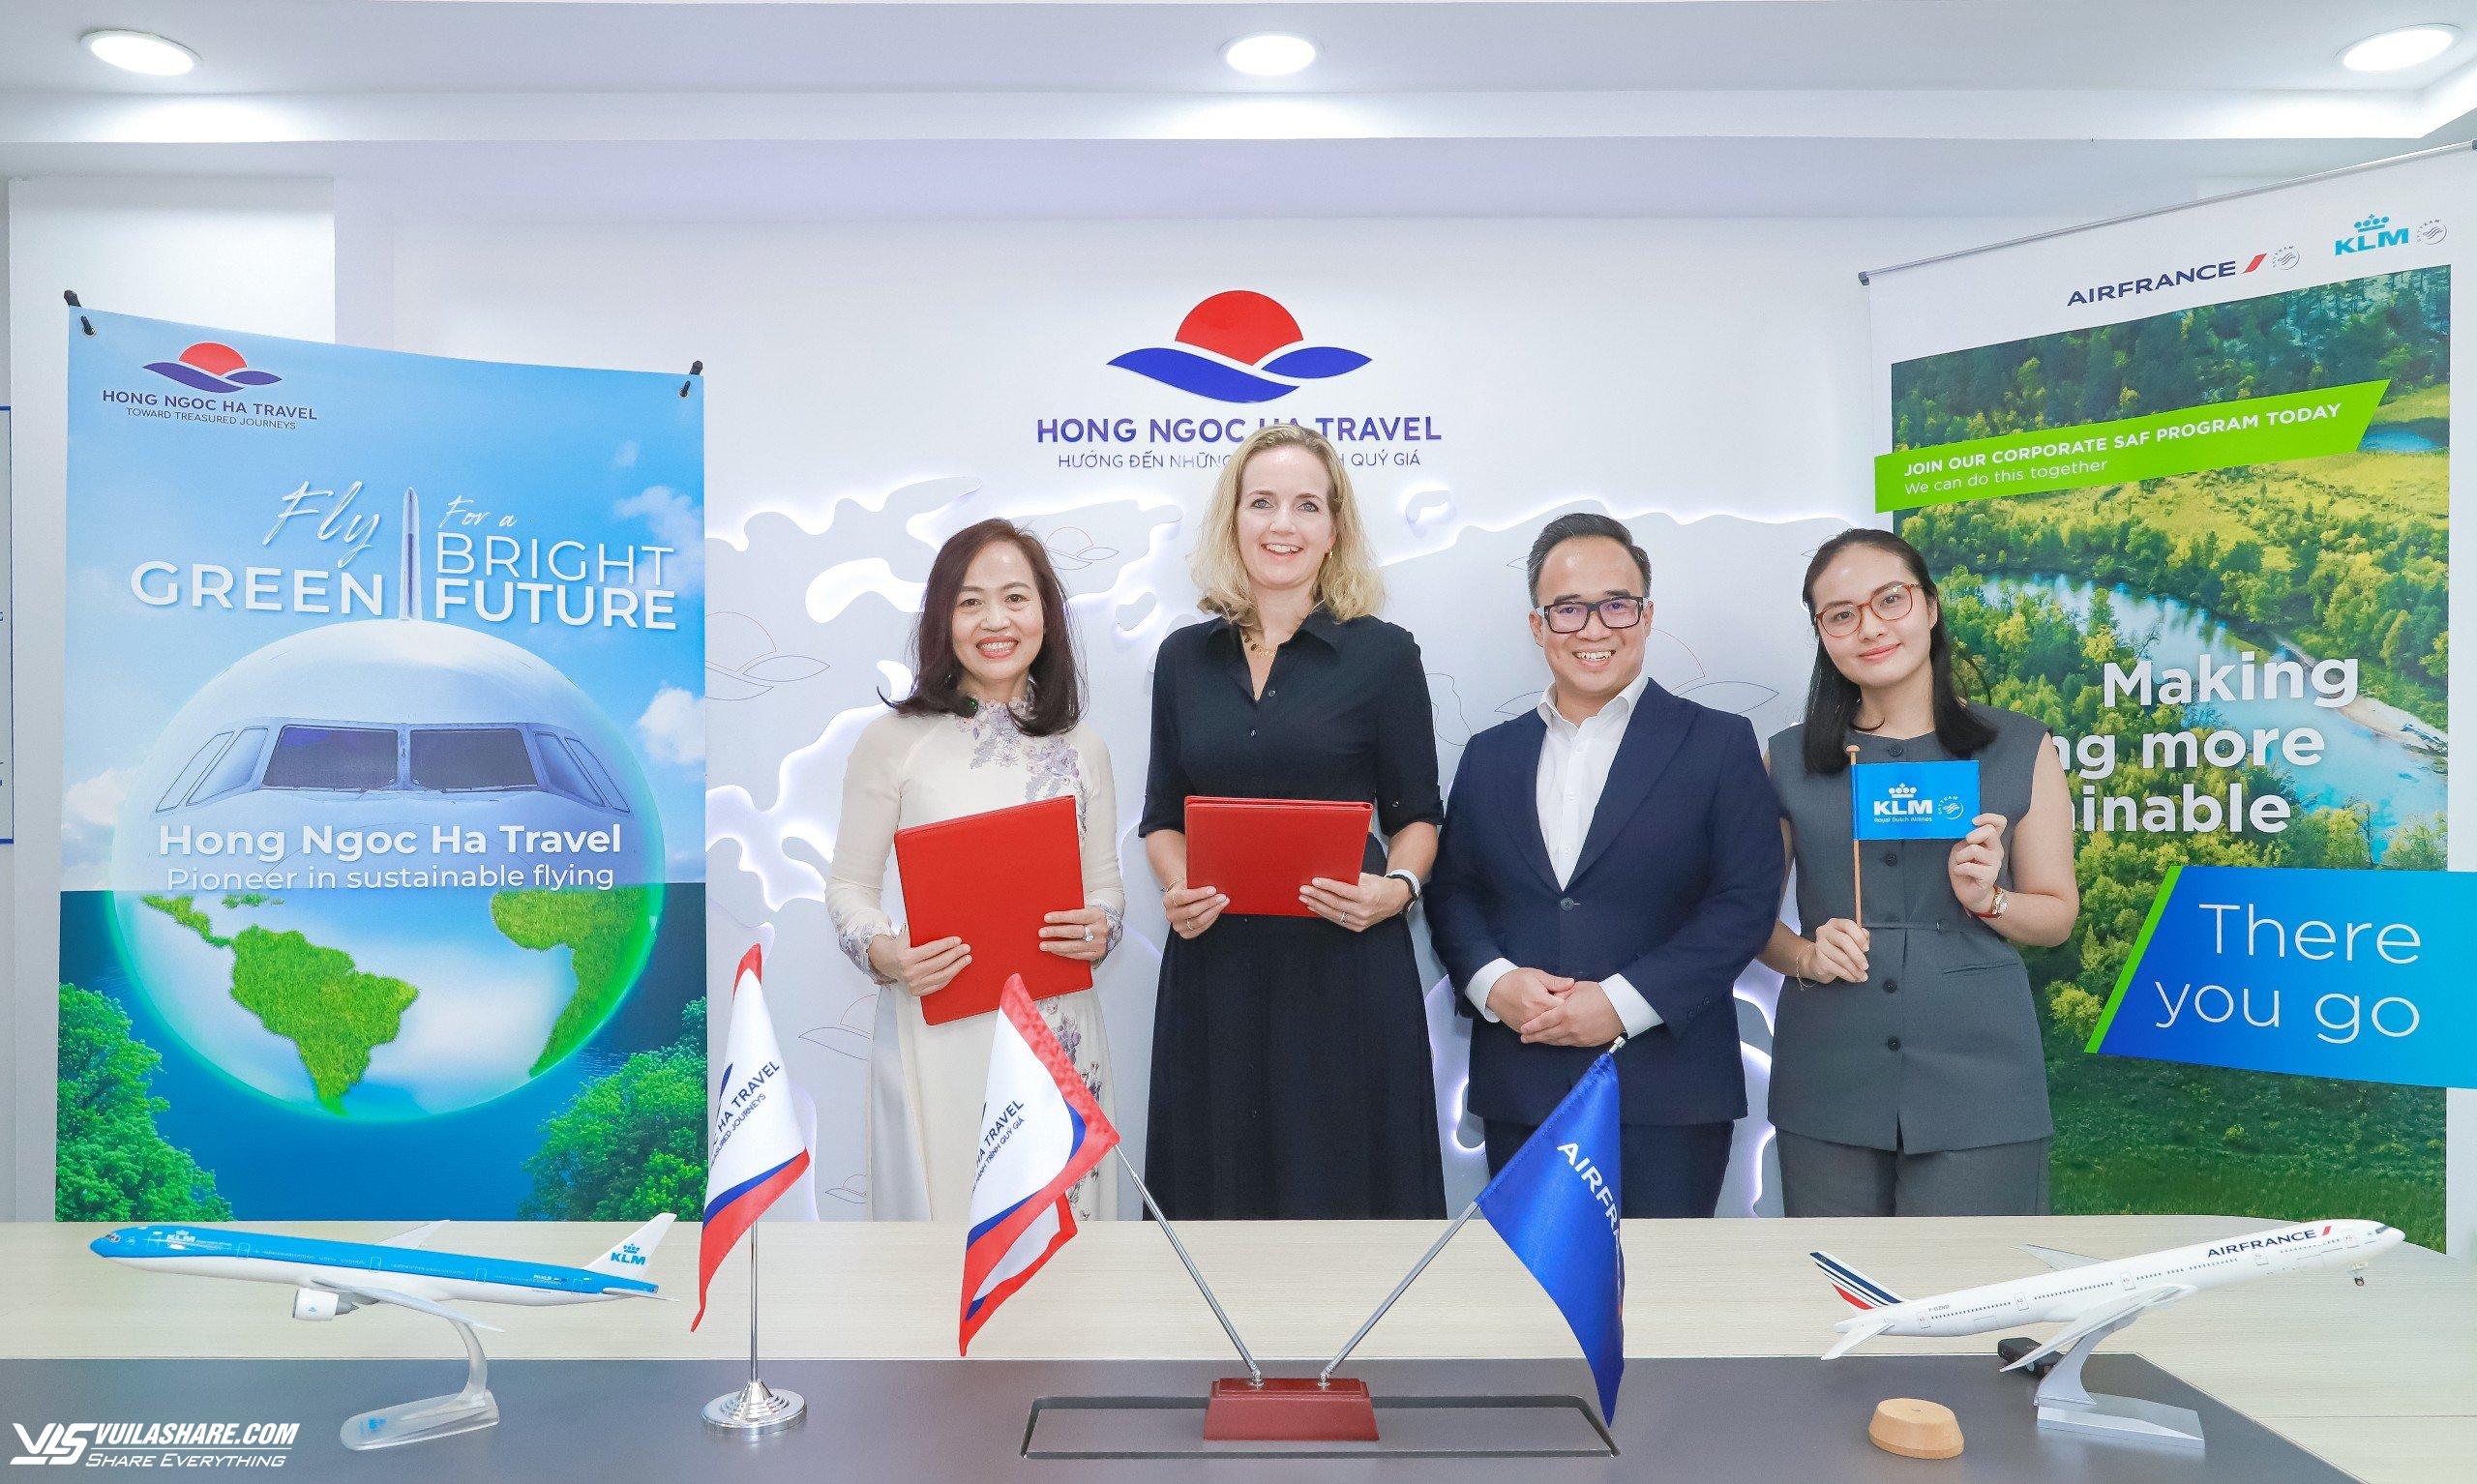 Doanh nghiệp du lịch Việt 'bắt tay' Air France hướng tới du lịch không carbon- Ảnh 1.